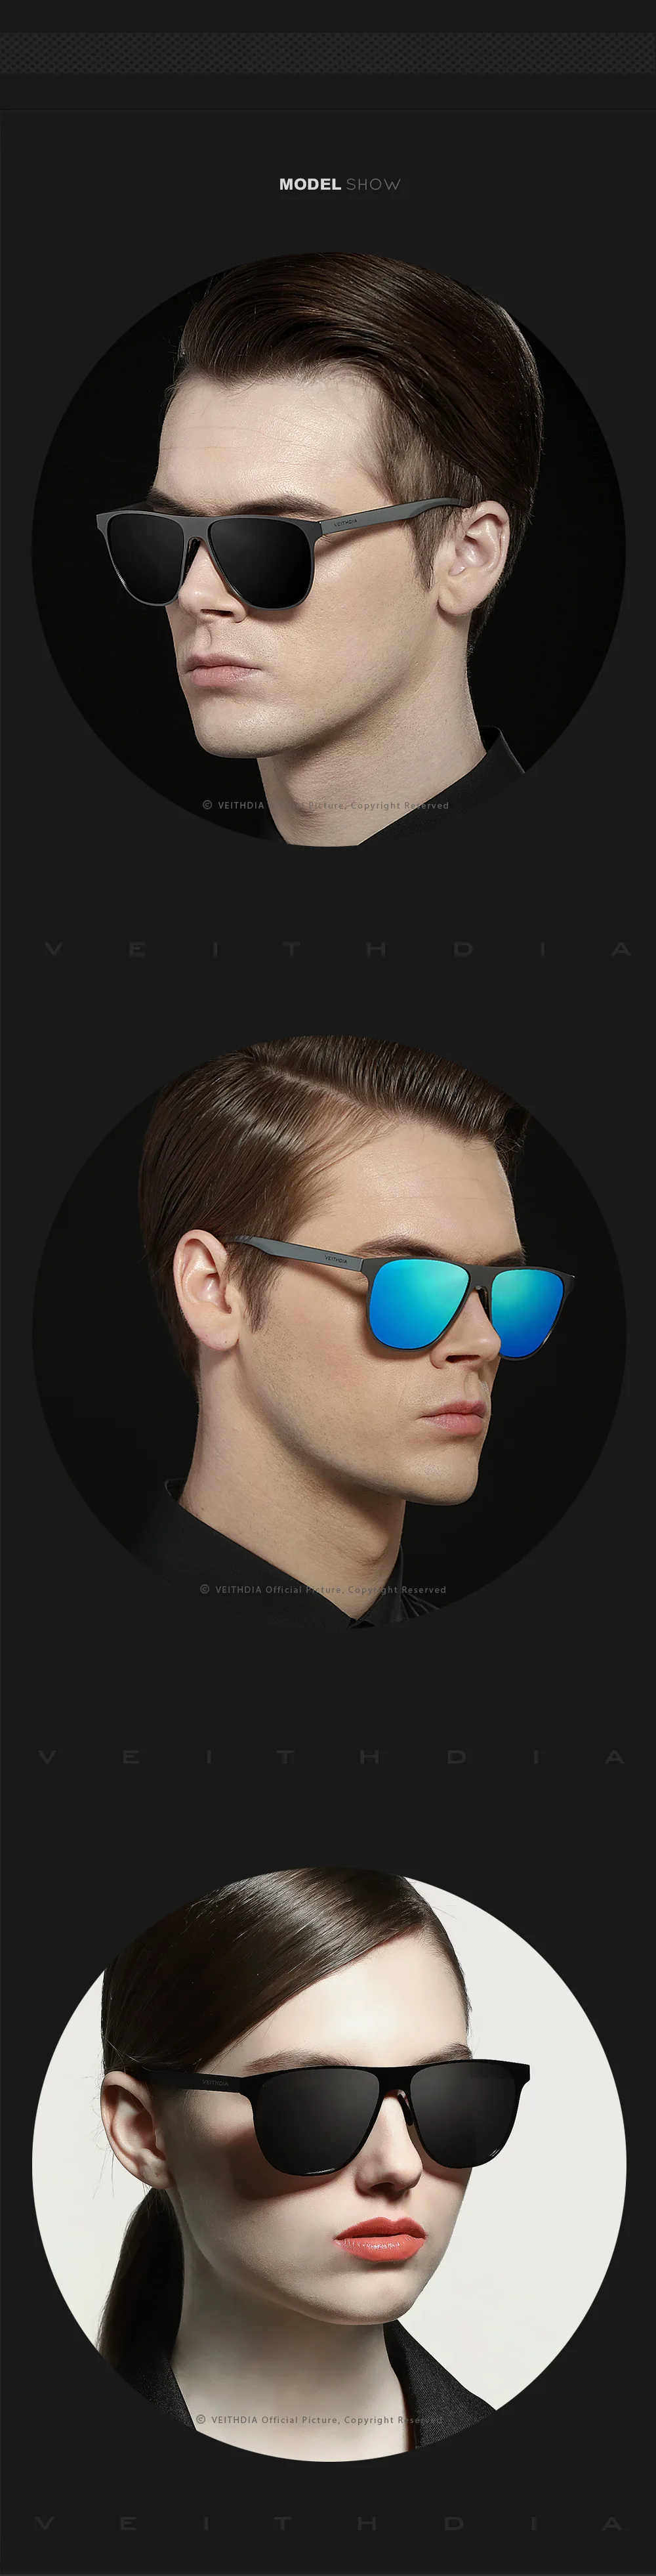 New VEITHDIA Brand Unisex Stainless Steel Sunglasses Polarized Eyewear Accessories Male Sun Glasses For Men/Women gafas VT3920 12